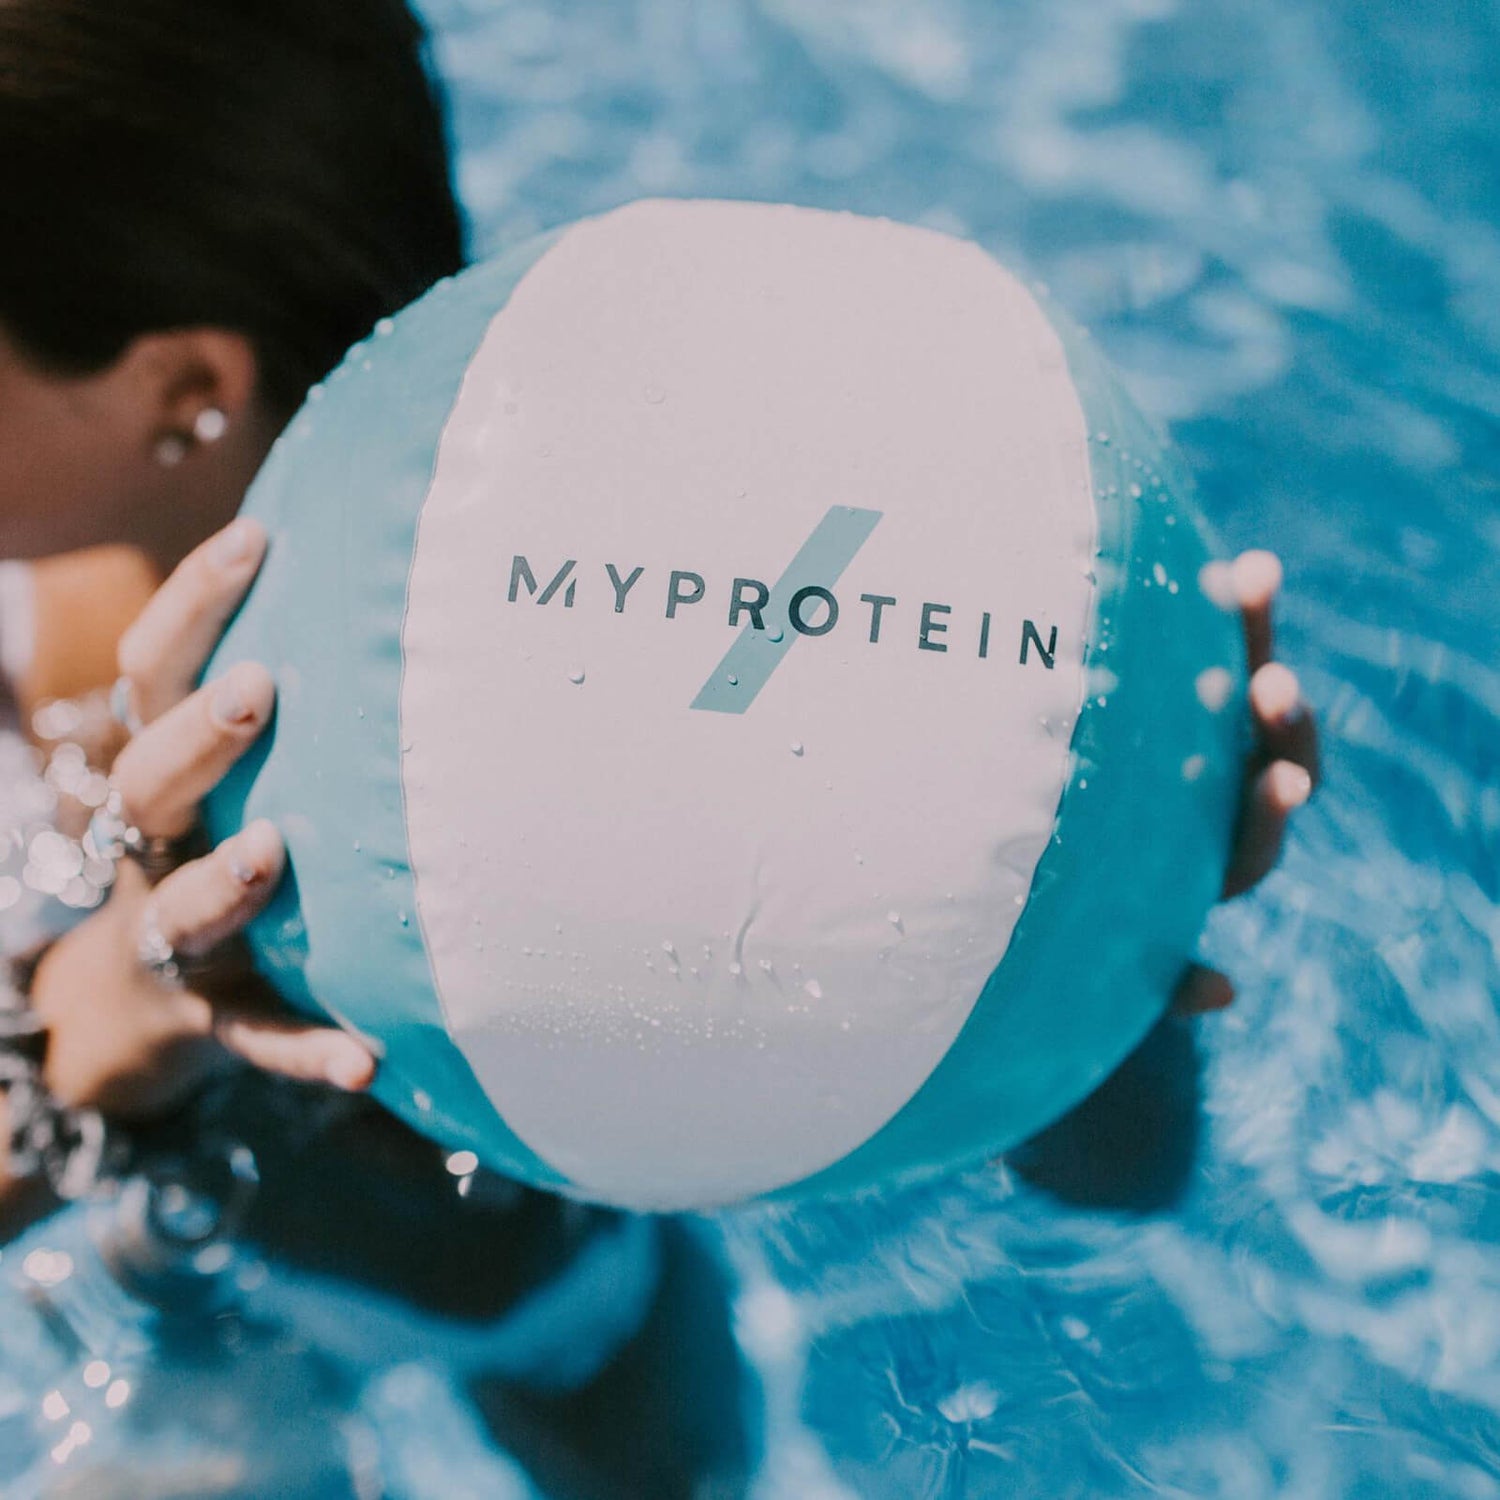 Myprotein Beach Ball (Free Gift)